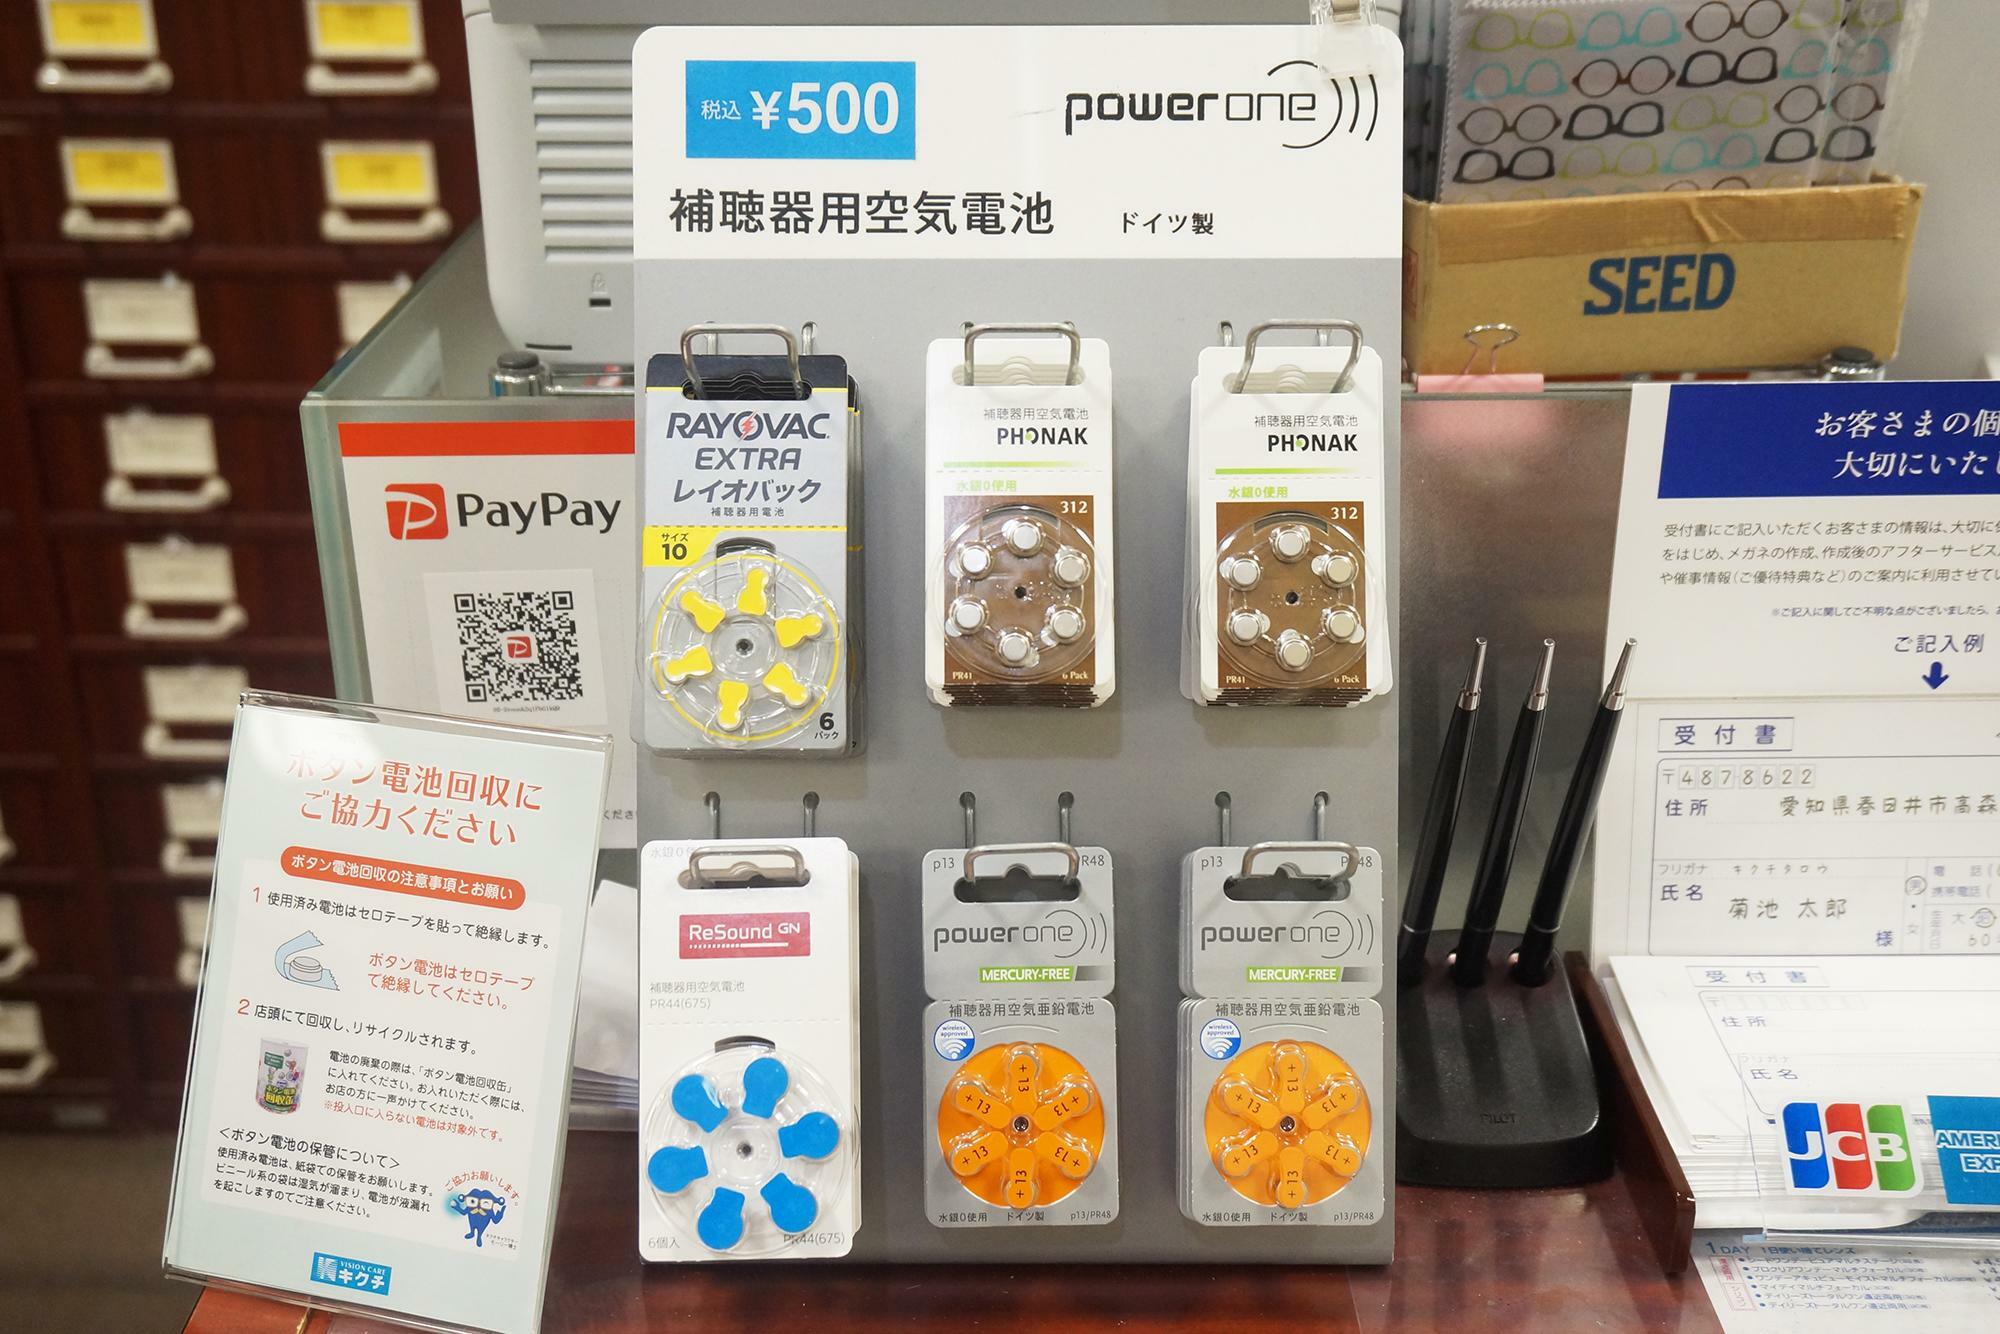 補聴器用空気電池は各500円で販売があります。